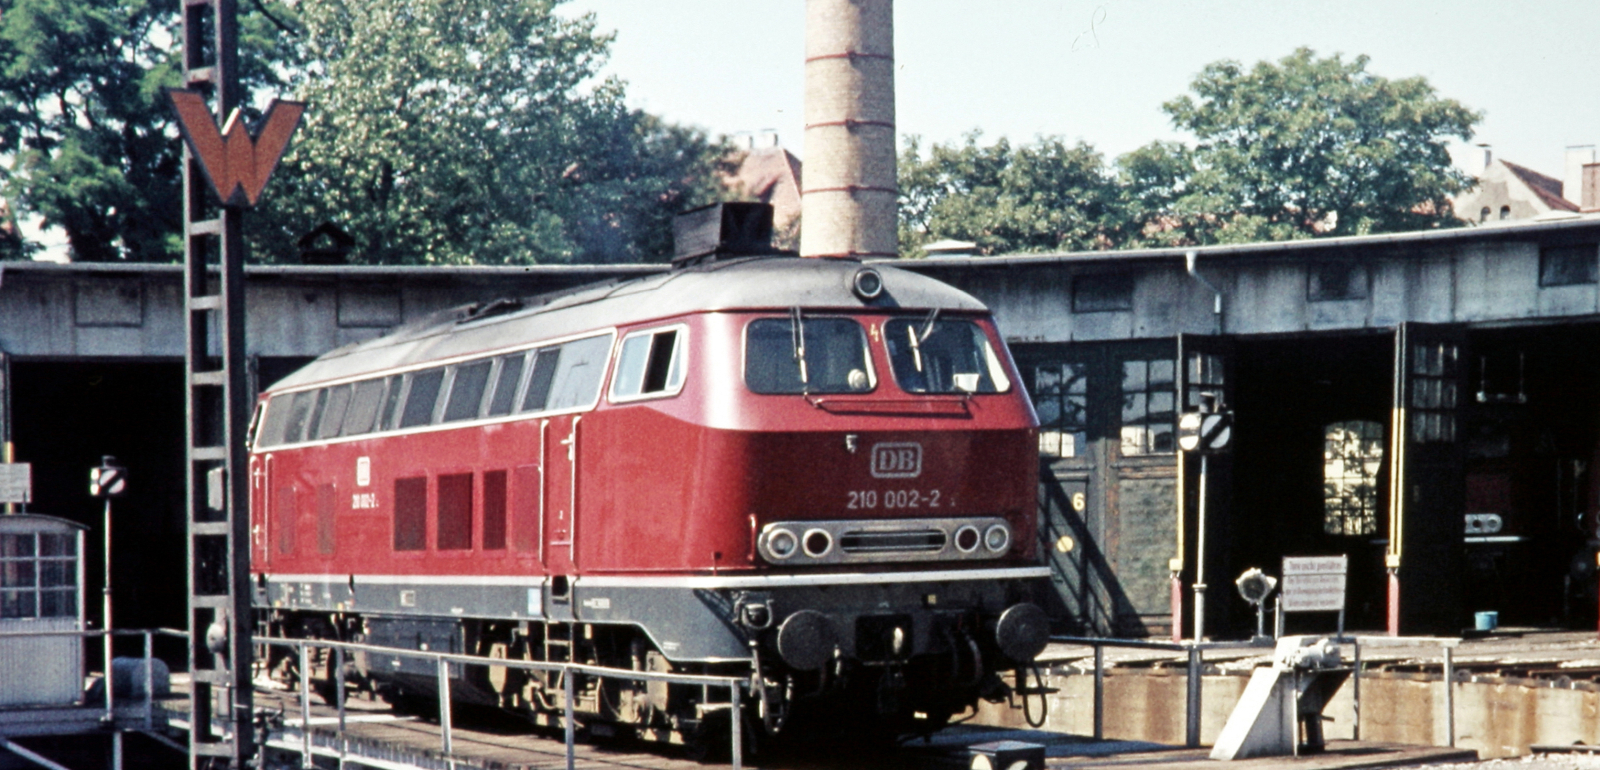 210 002 in July 1974 in Lindau